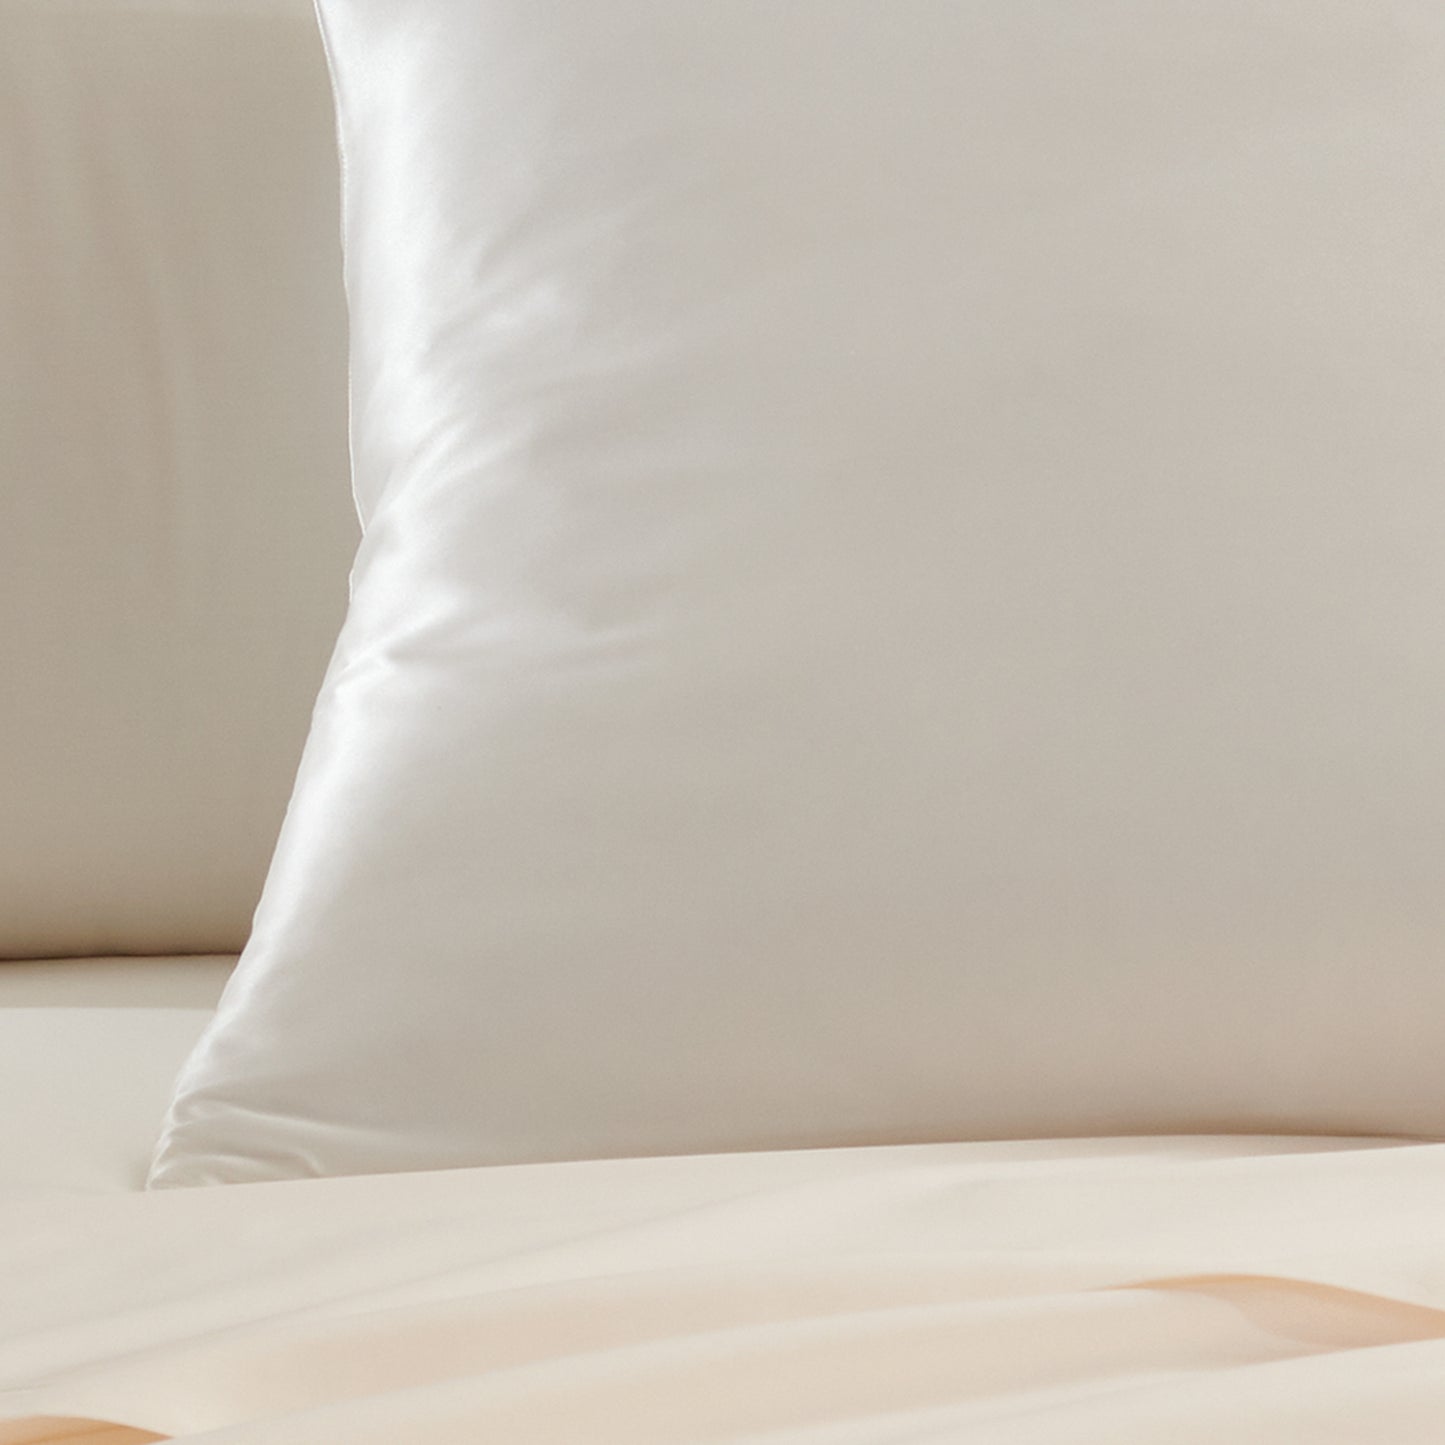 Donna Karan Essential Silky Pillowcase